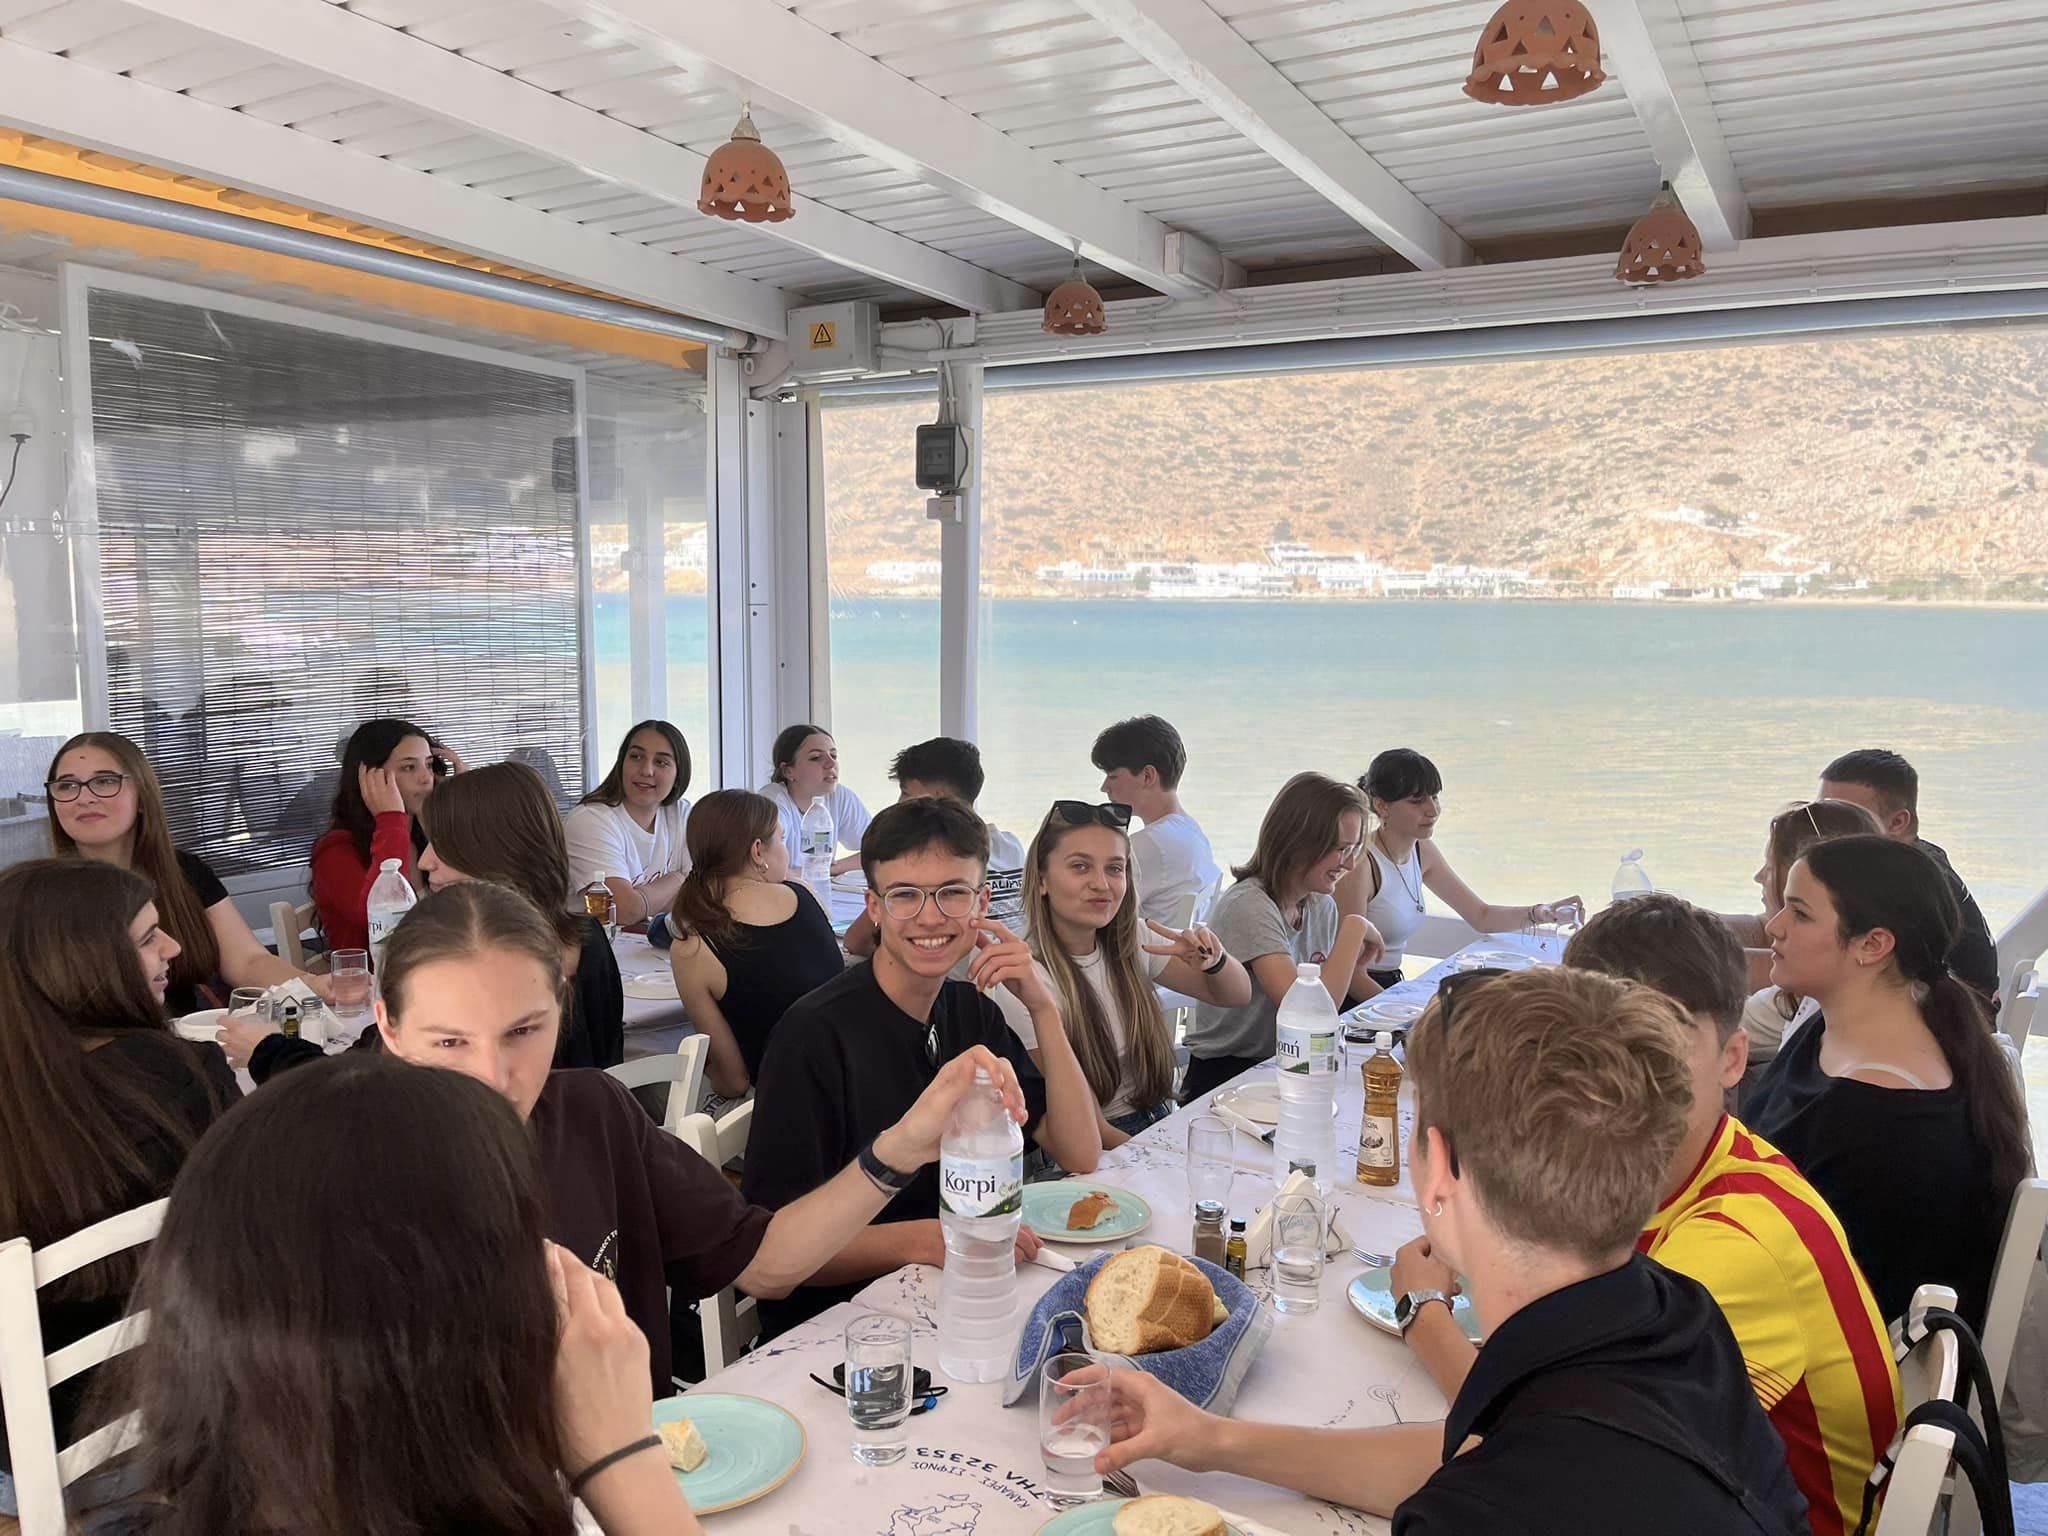 W dniach 14-21 kwietnia grupa 11 uczniów pod opieką p. Agnieszki Gemborys i p. Katarzyny Ścisłowicz spędziła wspaniałe chwile w Grecji na pięknej wyspie Sifnos. Wyjazd odbył się w ramach projektu Erasmus+ „Troskliwa Szkoła - Zjednoczeni w Różnorodności,”, na promie, widok na morze